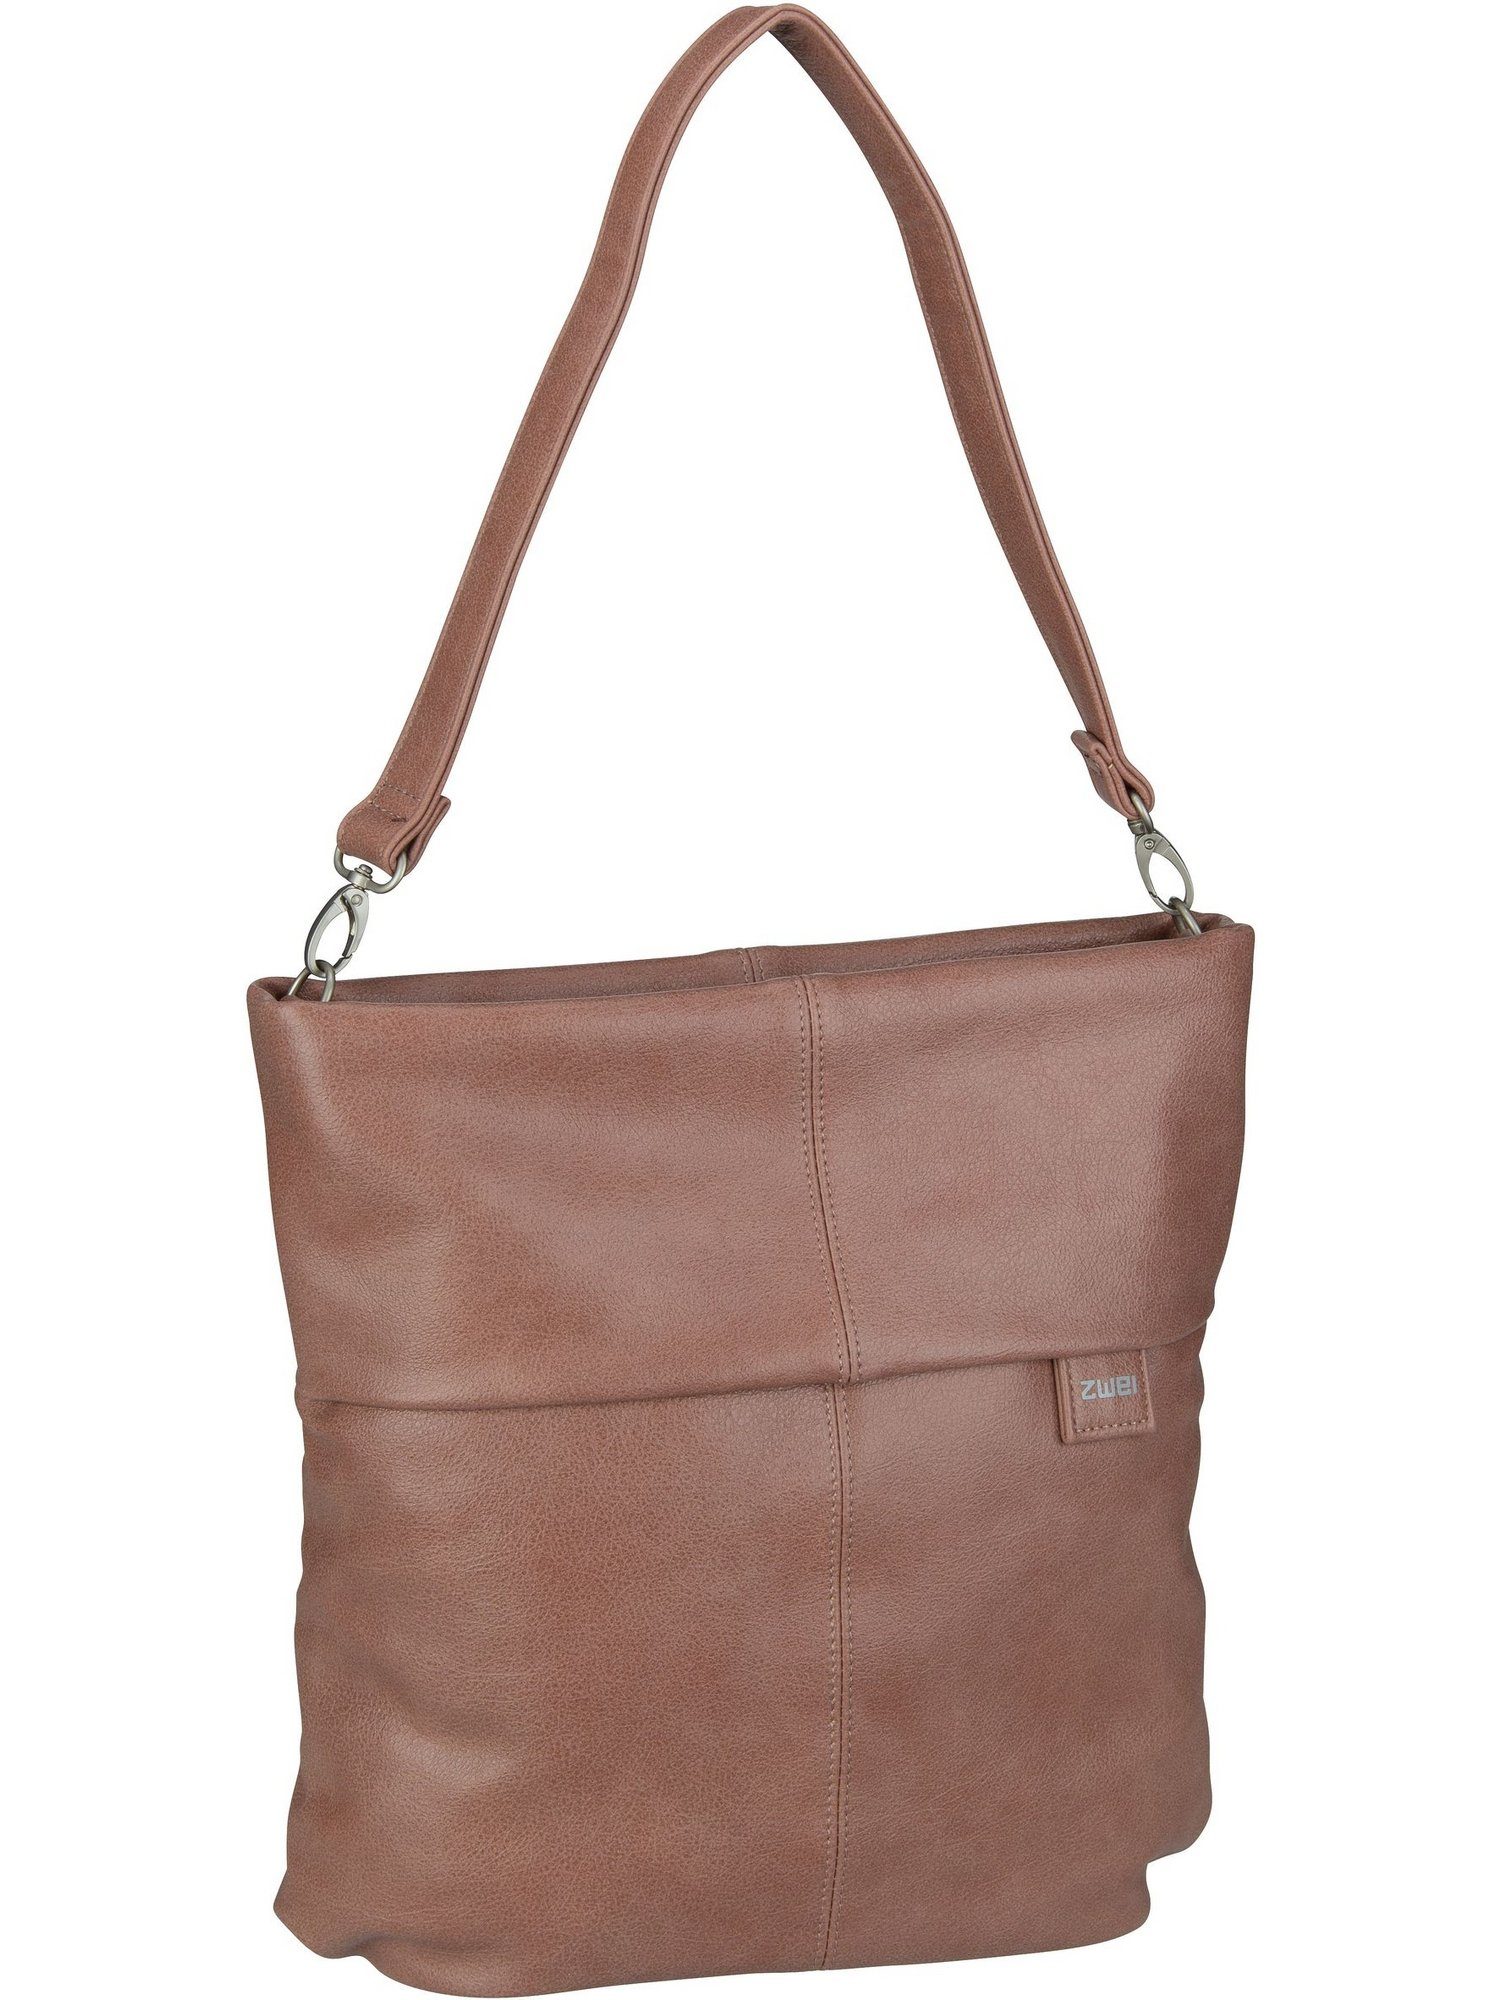 Zwei Handtasche Hobo Mademoiselle Bag M12, Blush